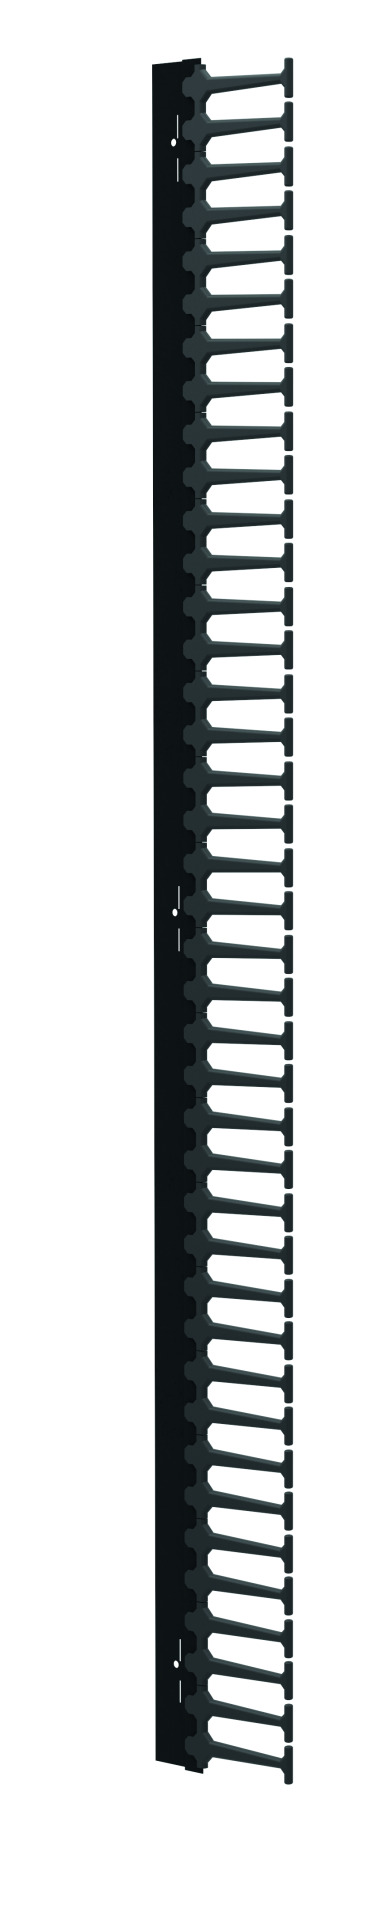 Vertikaler Kabelkamm für ESV 42HE, 1 Stück, RAL9005